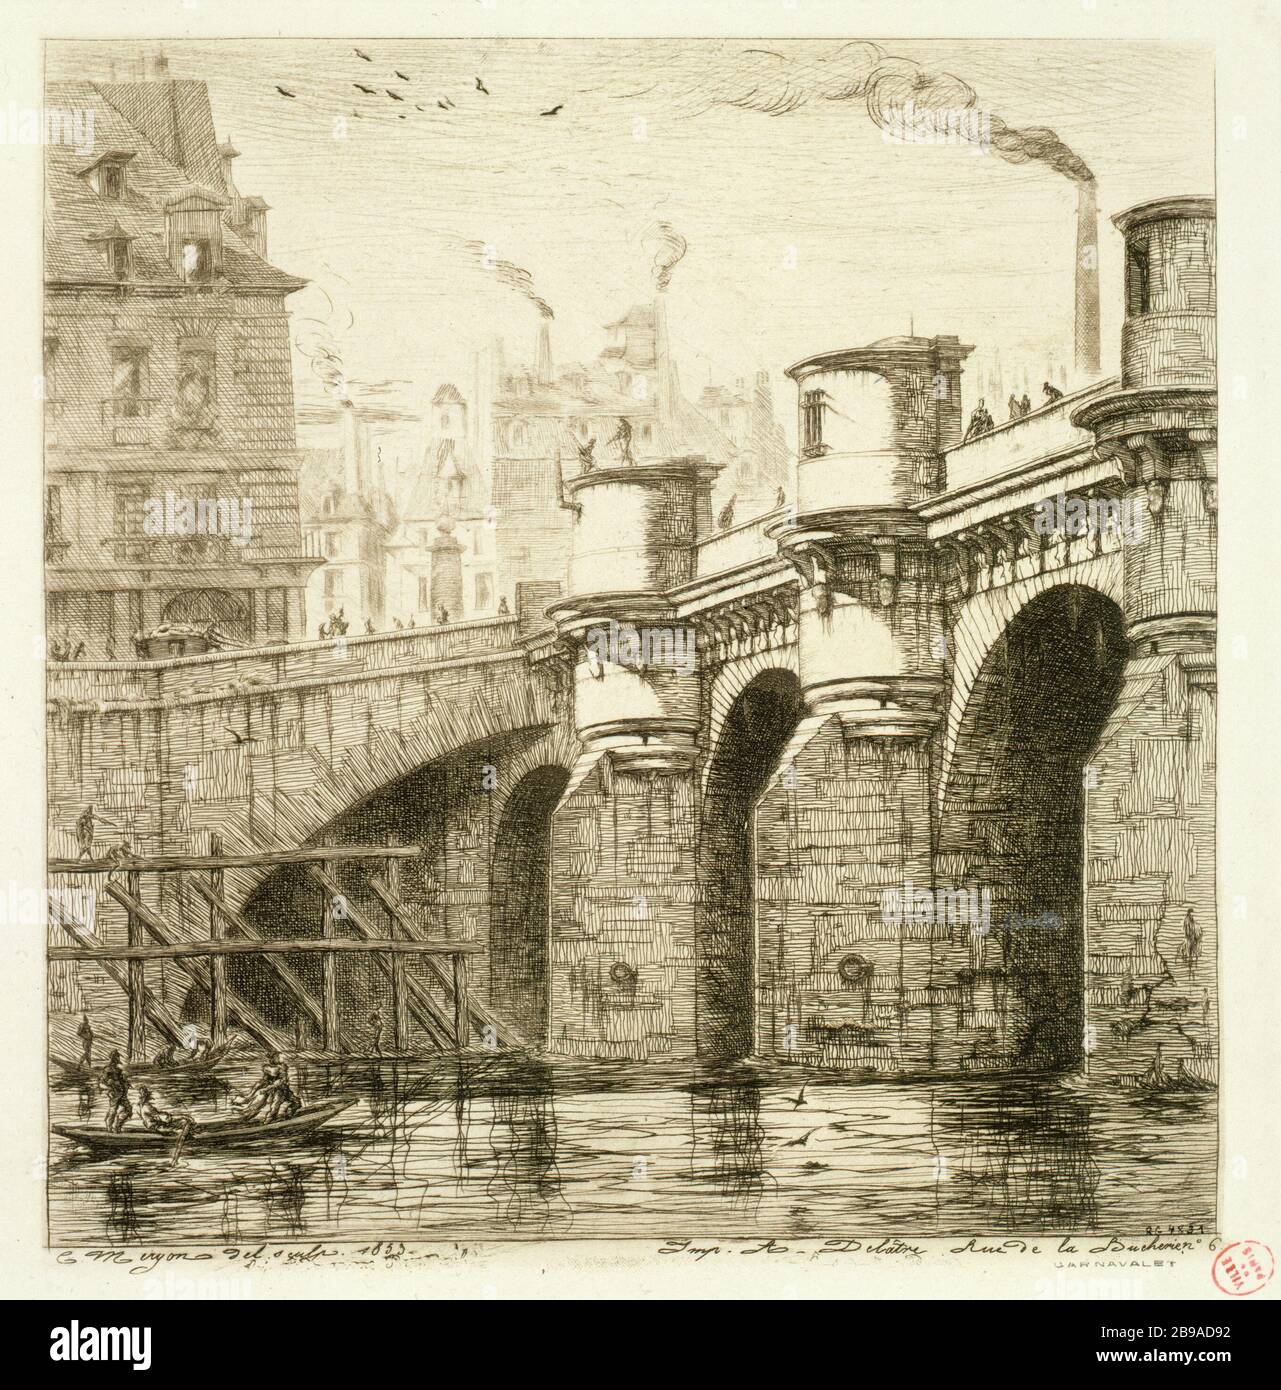 BRIDGE NINE IN 1853 Charles Méryon (1821-1868). 'Le Pont-Neuf en 1853'. Eau-forte. Paris, musée Carnavalet. Stock Photo